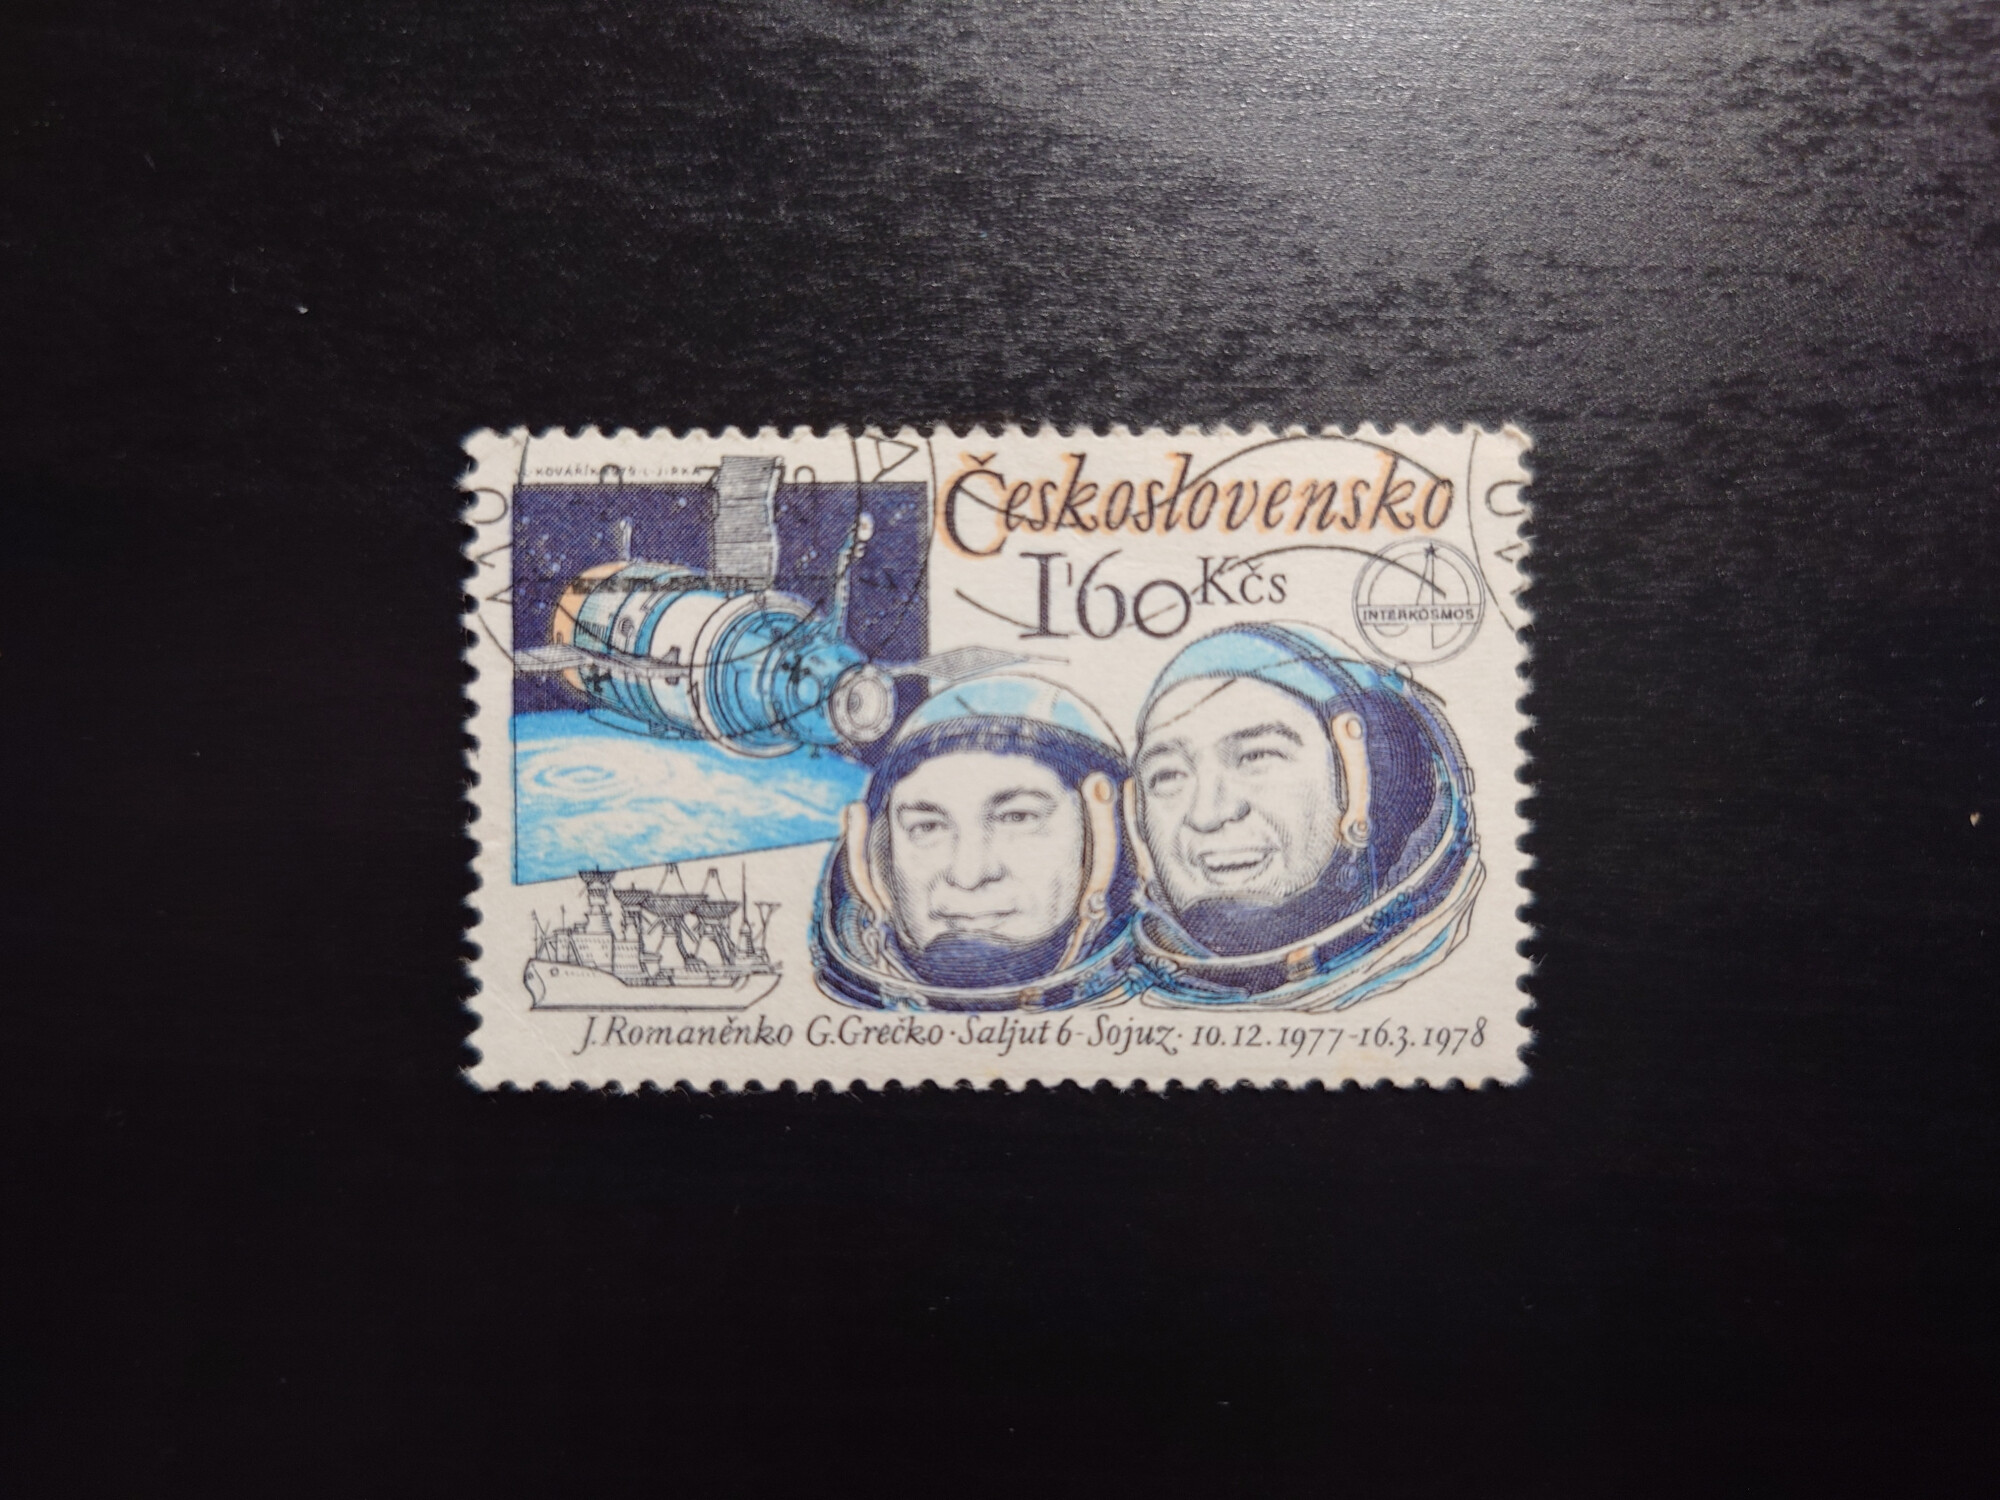  Ceskoslovensko Saljut 6 - Soyuz (160 Kcs)